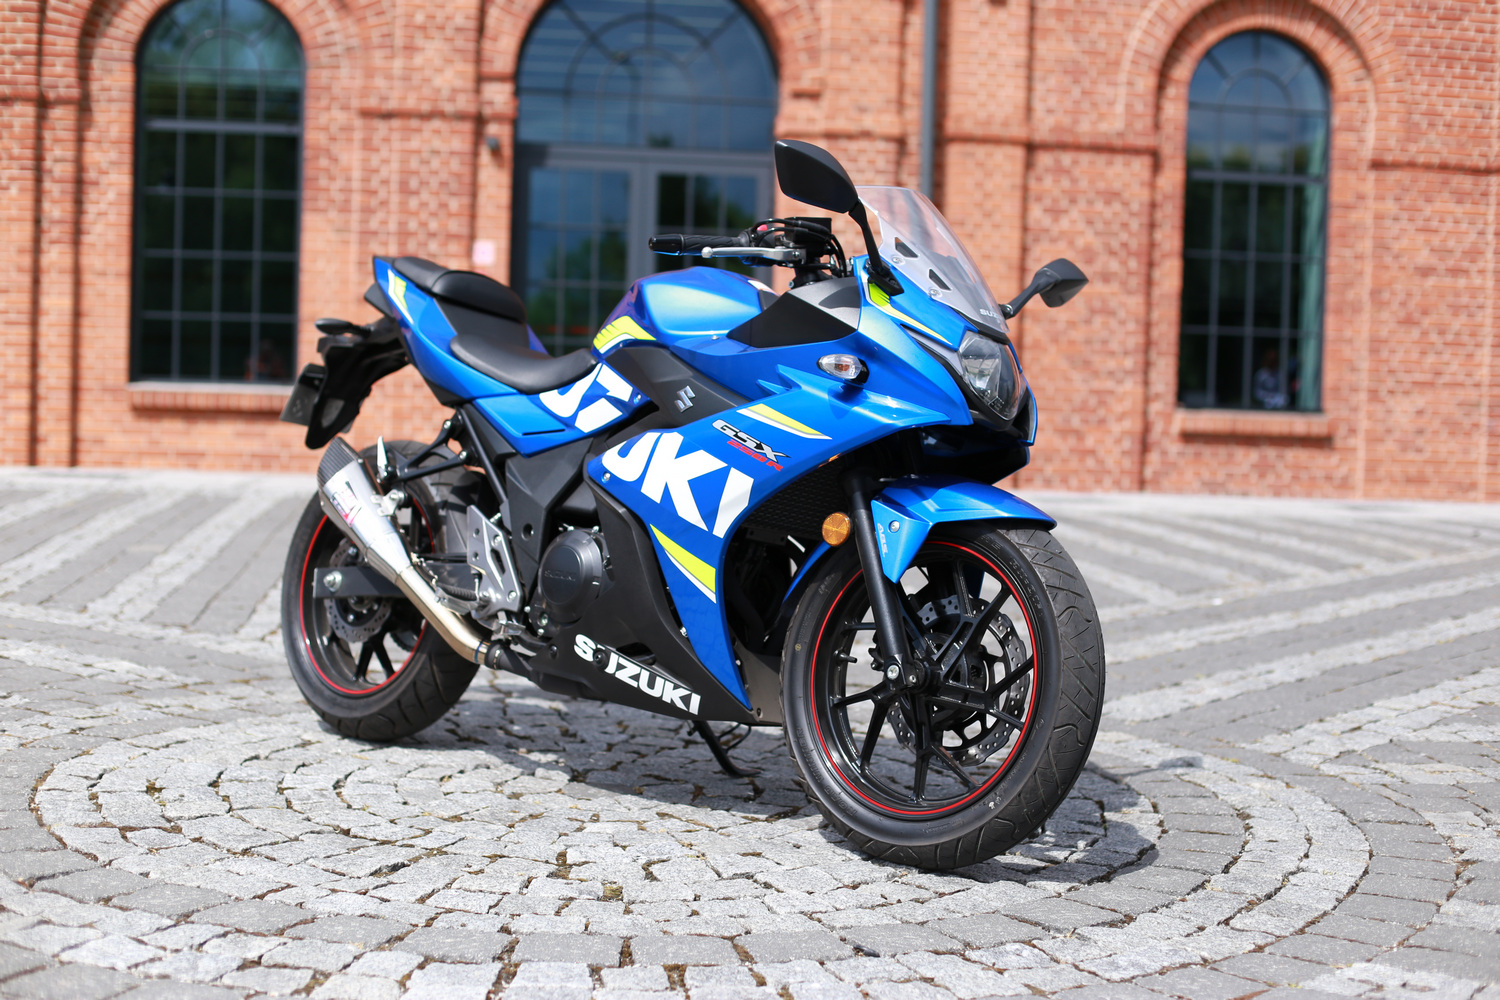 Motocykle Suzuki 2018 test nowości Suzuki na sezon 2018